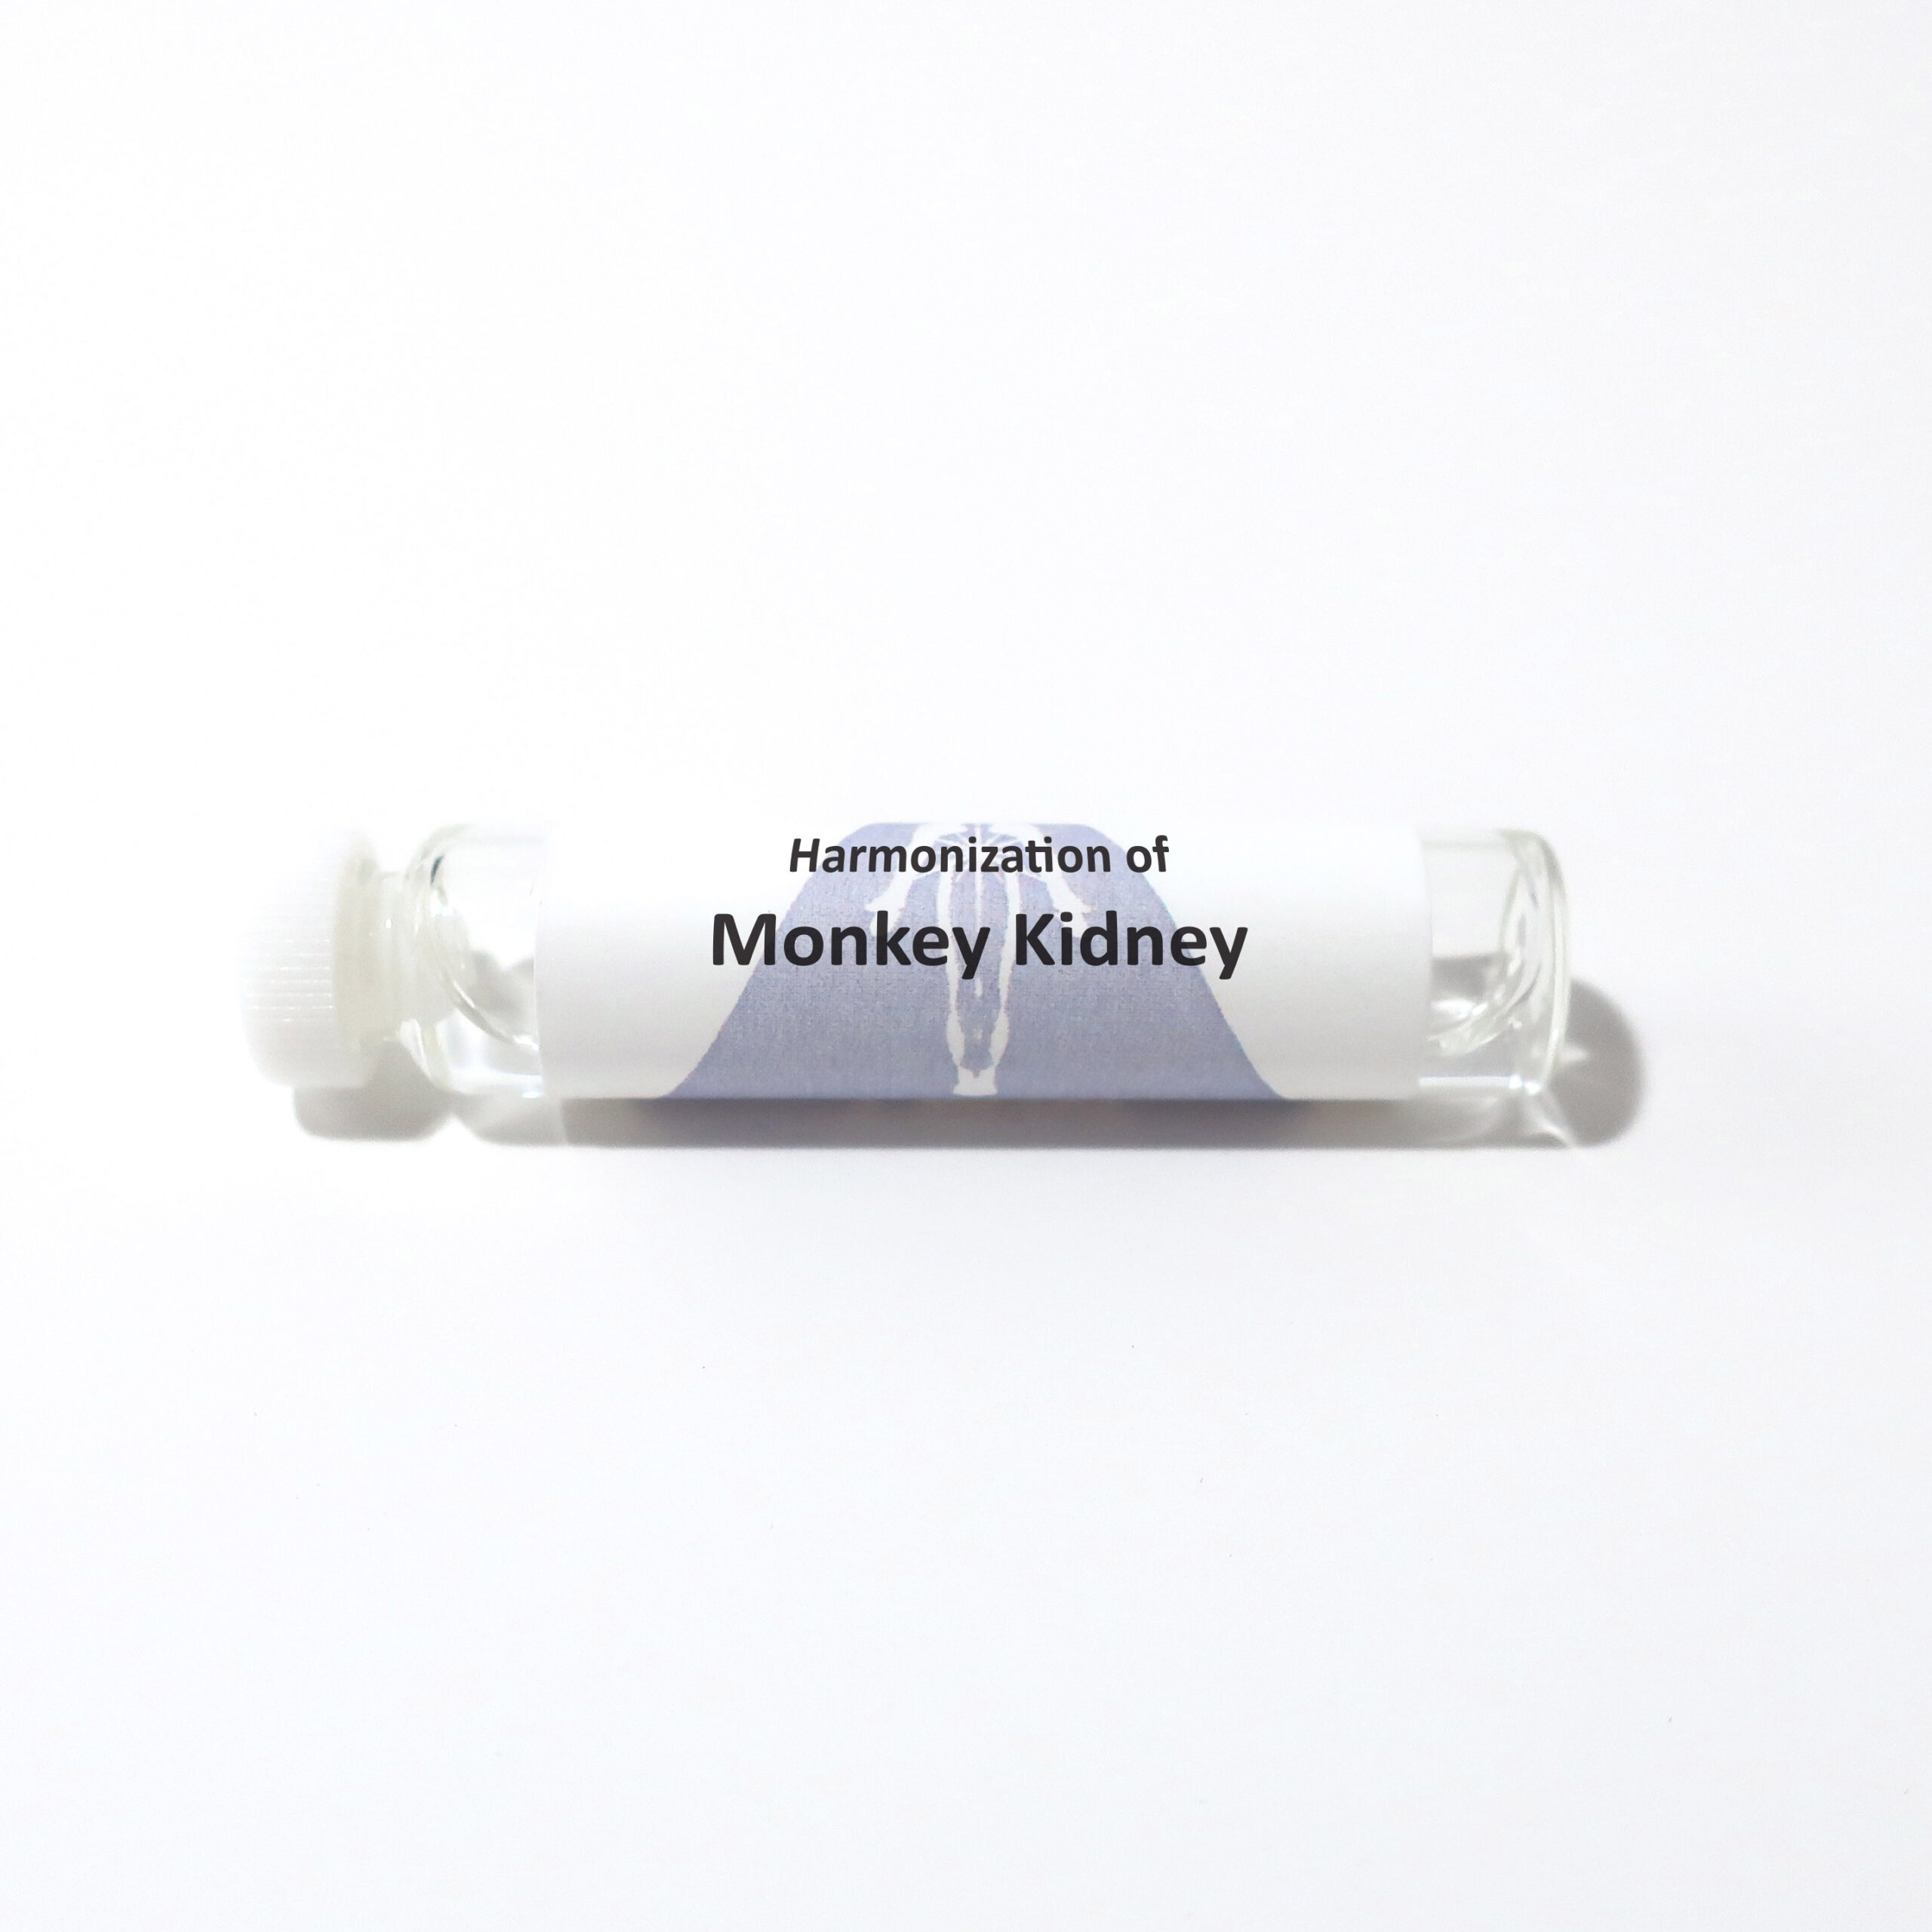 Monkey Kidney